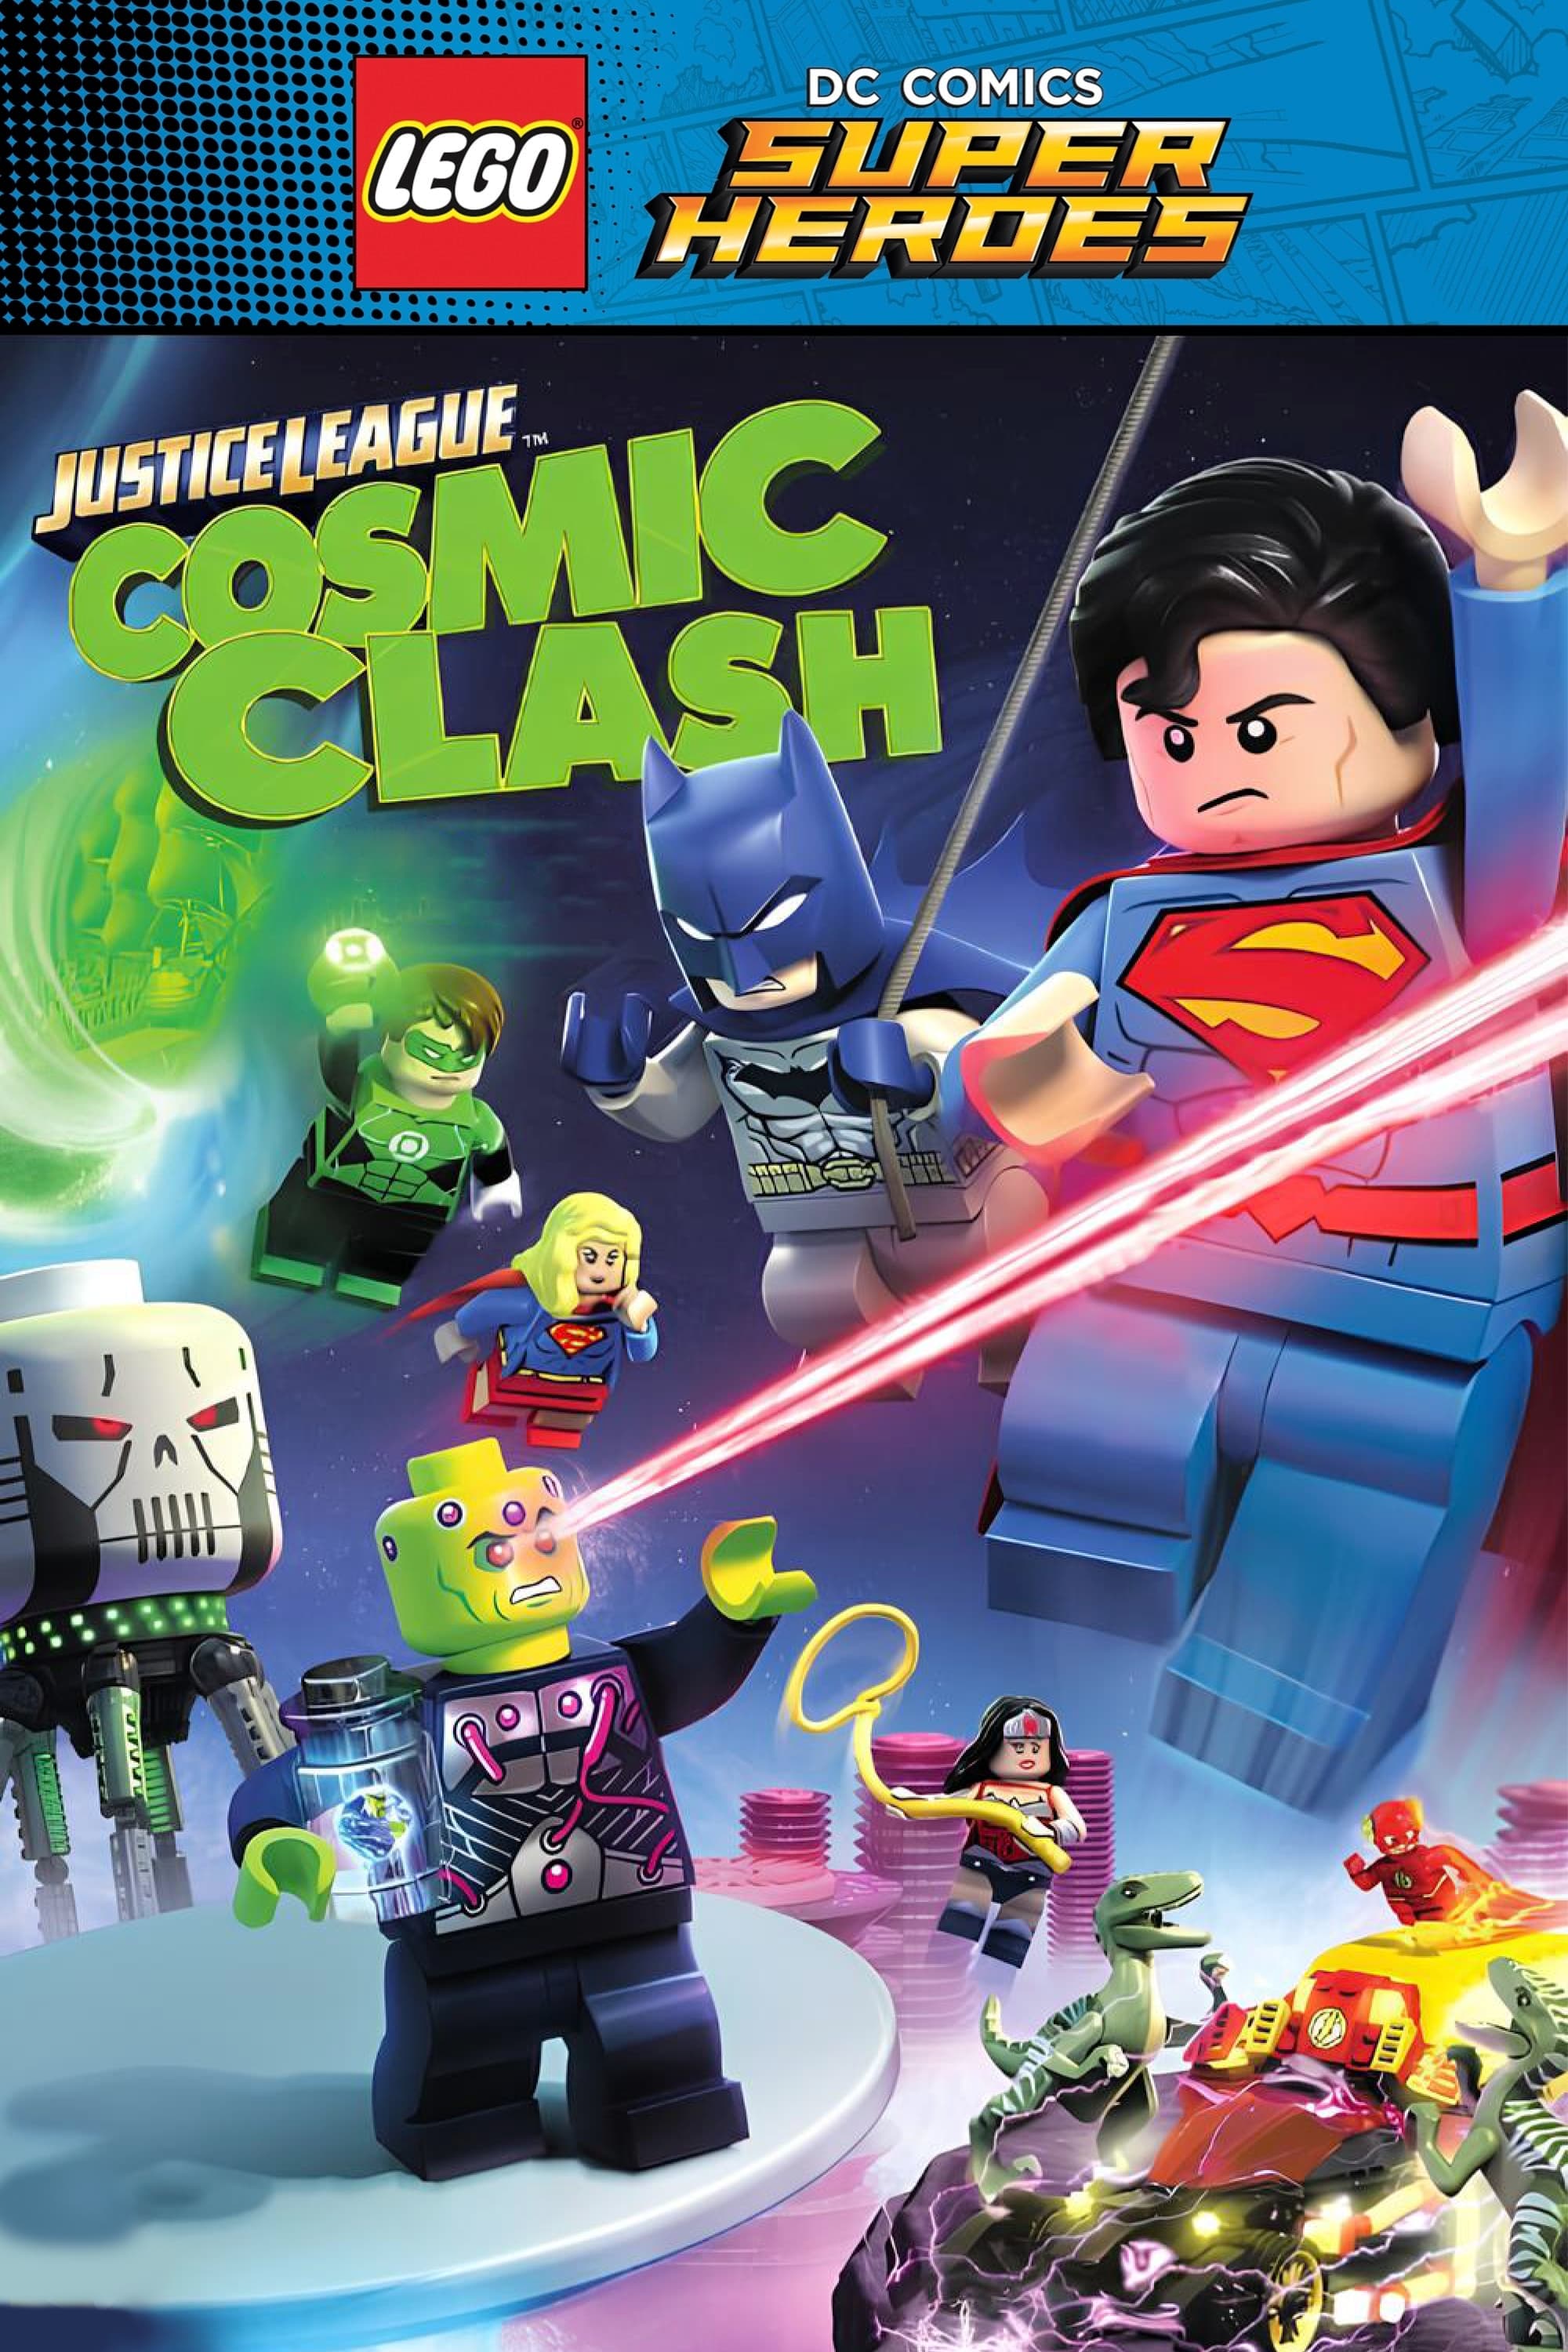 LEGO DC Comics Super Heroes: Justice League: Cosmic Clash (LEGO DC Comics Super Heroes: Justice League: Cosmic Clash) [2016]